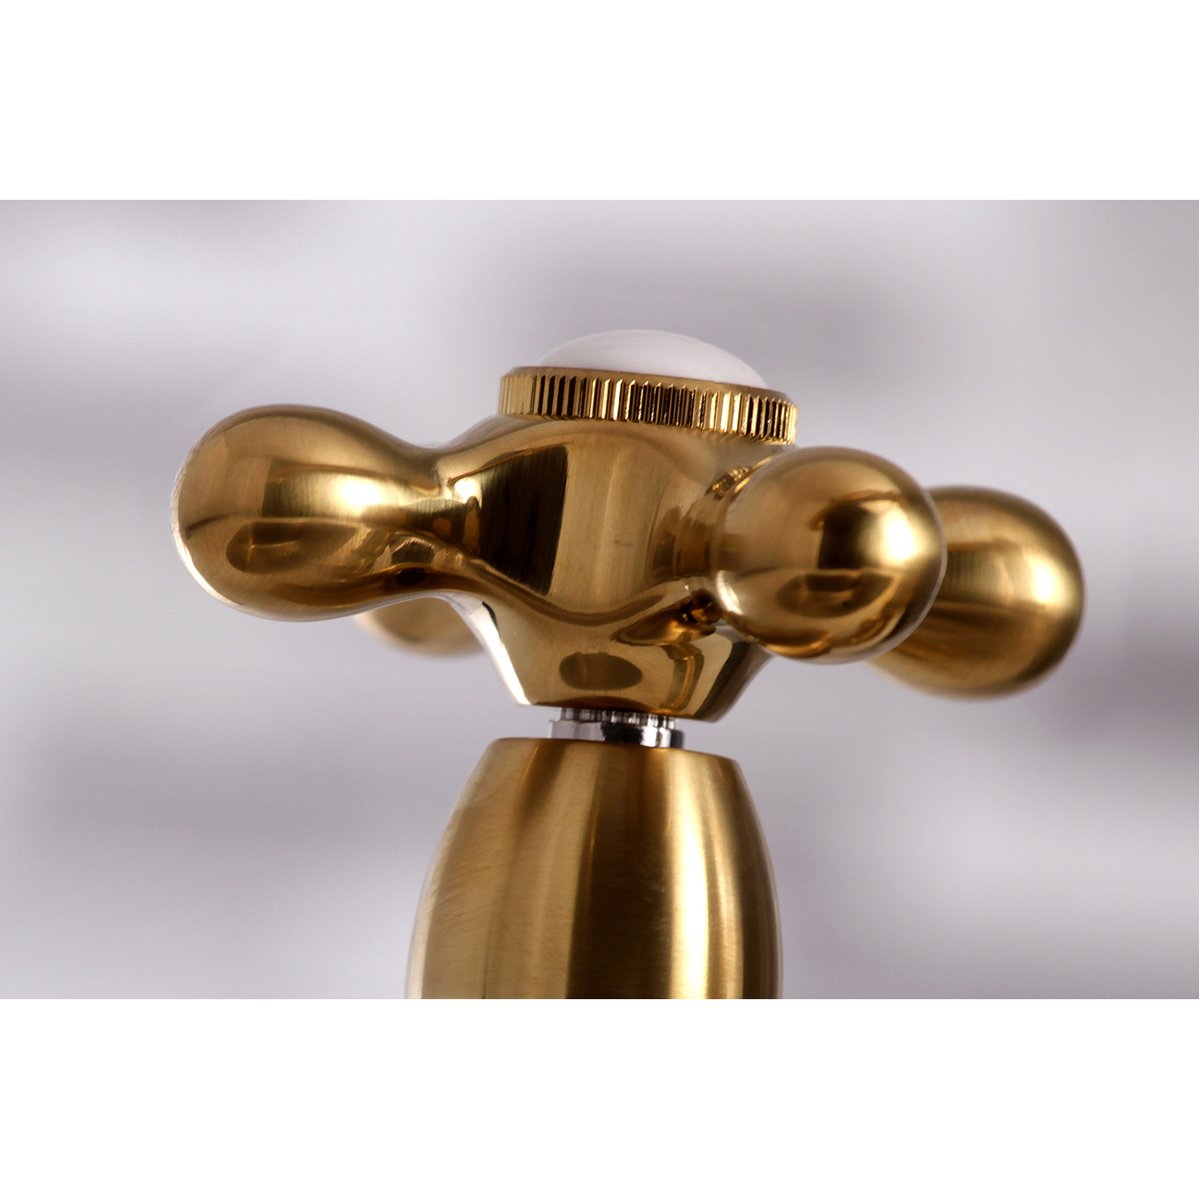 Kingston Brass Restoration 8" Bridge Kitchen Faucet with Sprayer